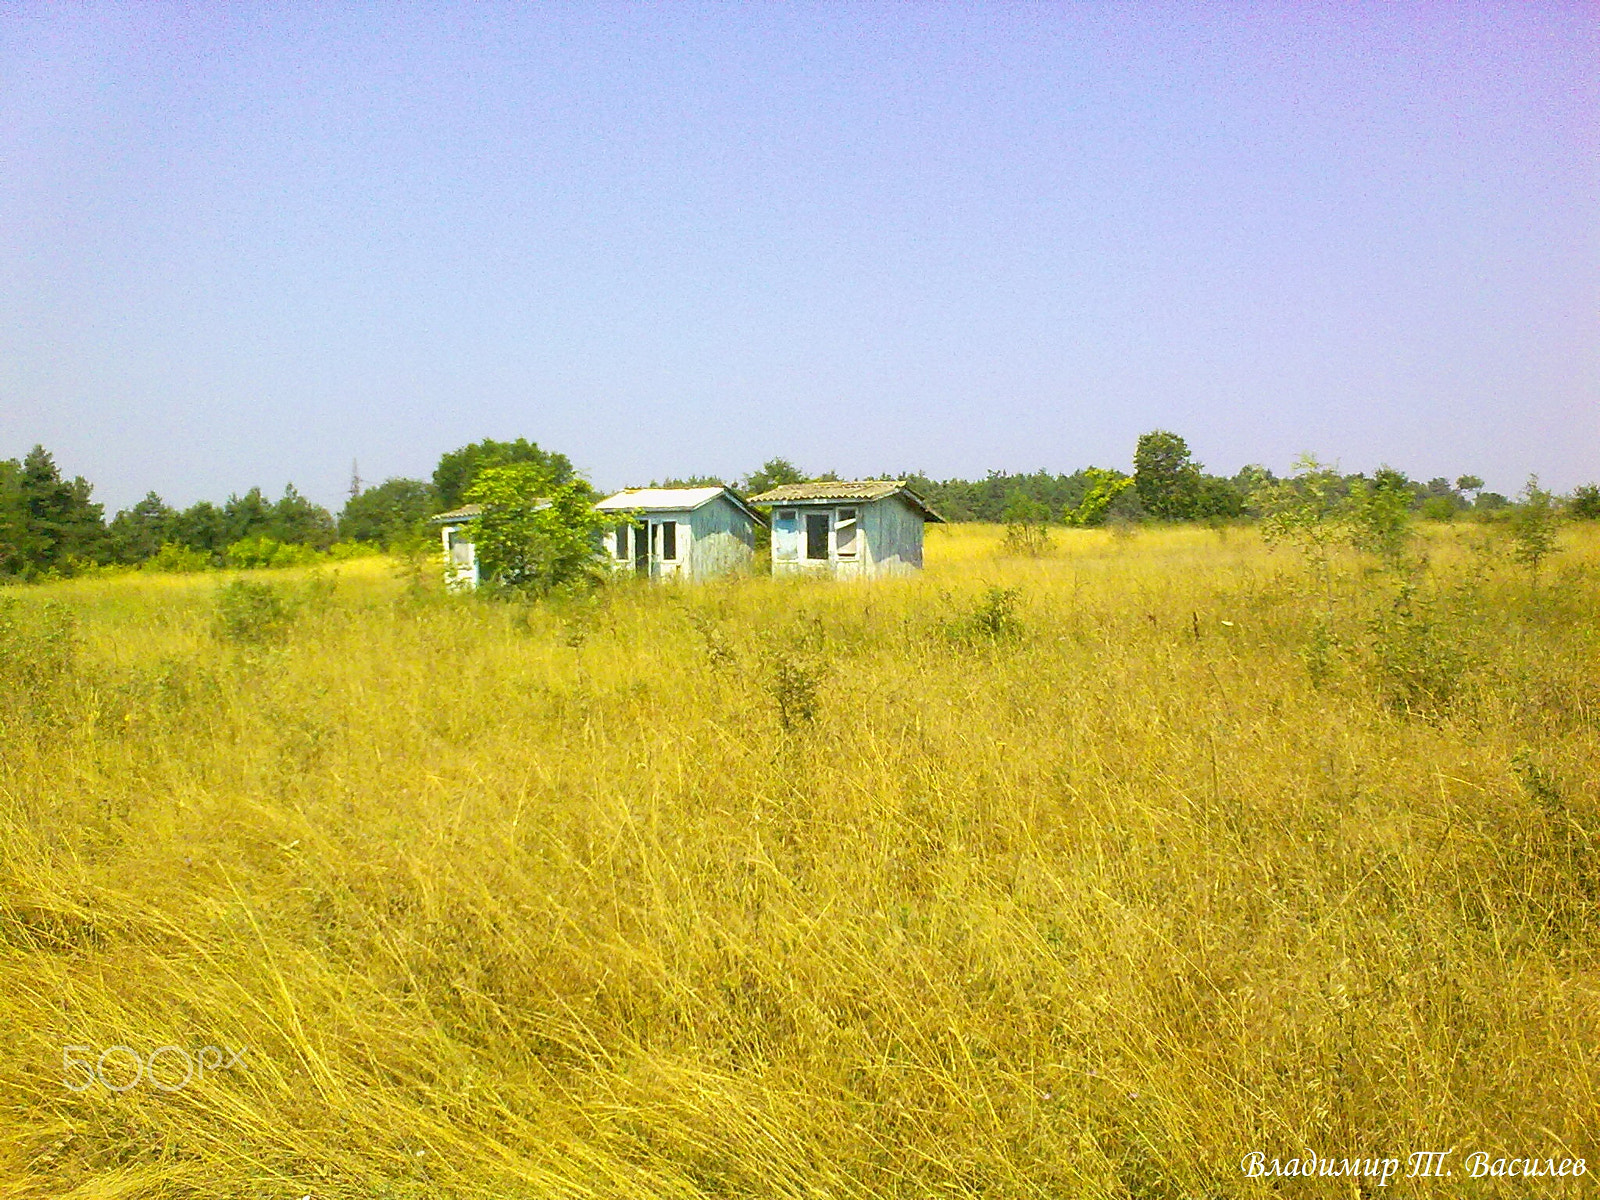 Nokia 5530 sample photo. Golden grass photography